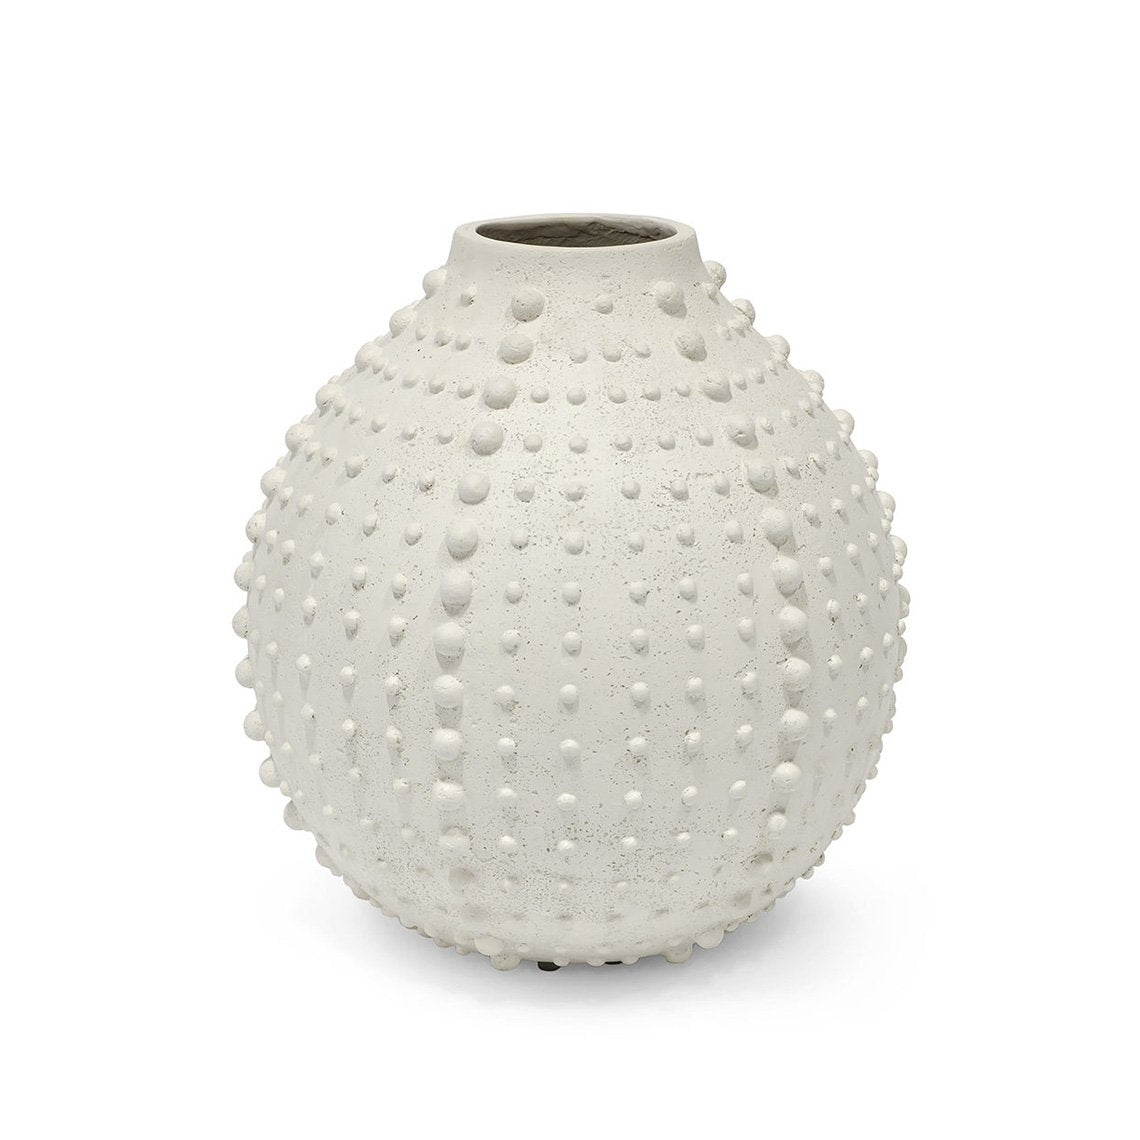 Urchin Vase, Large